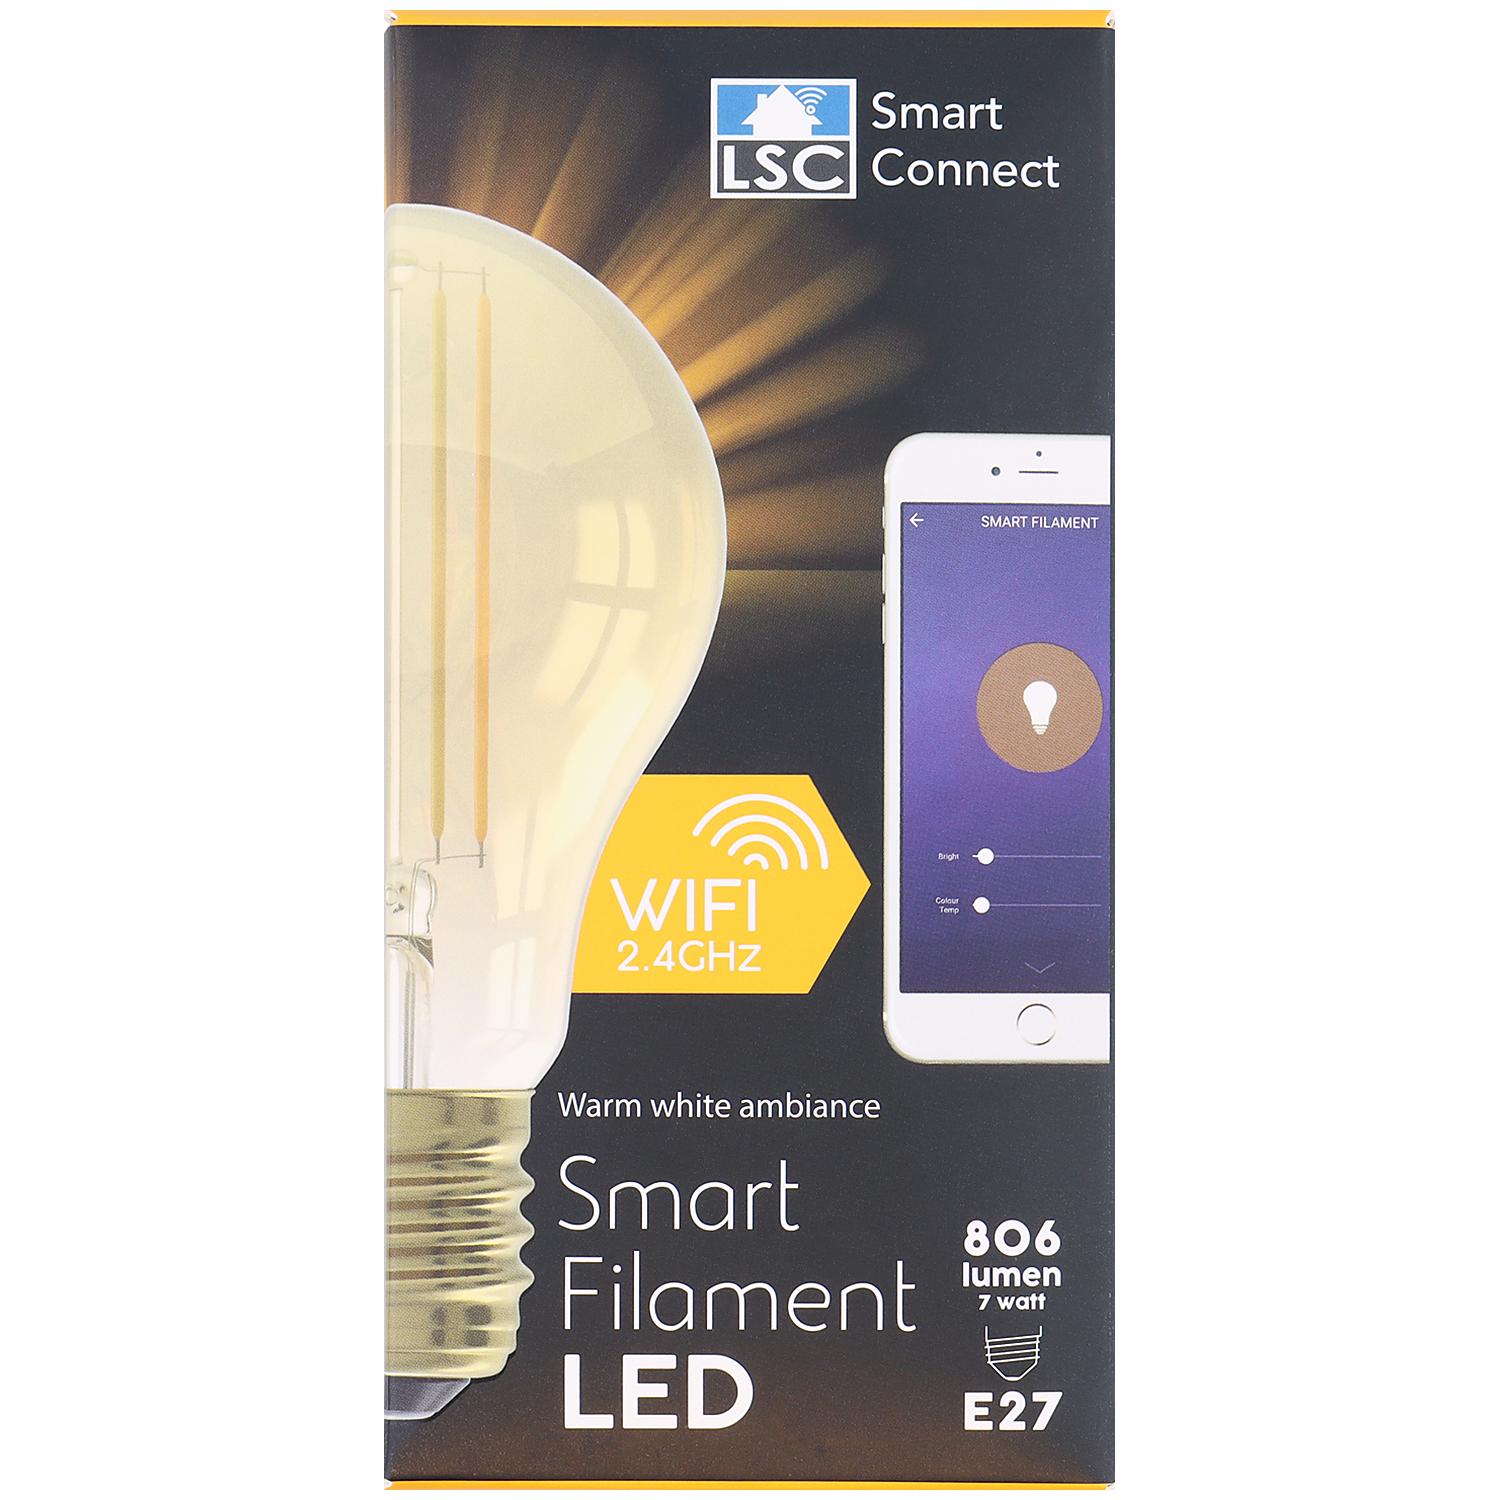 lsc smart connect slimme filament ledlamp action com